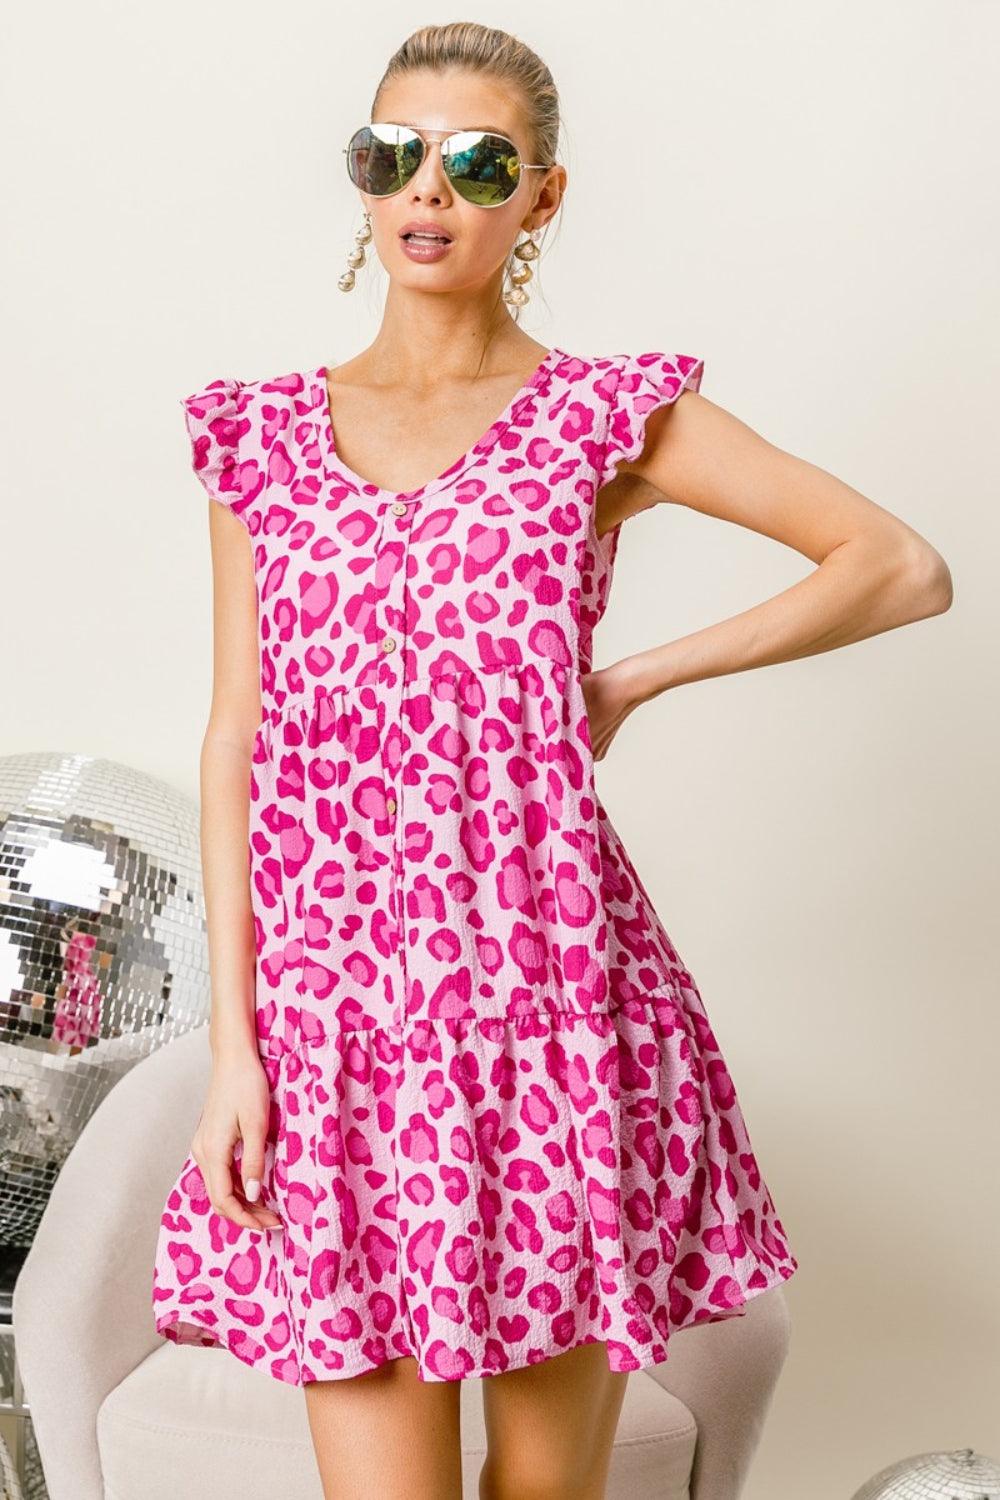 BiBi Leopard Cap Sleeve Tiered Mini Dress - AMIClubwear